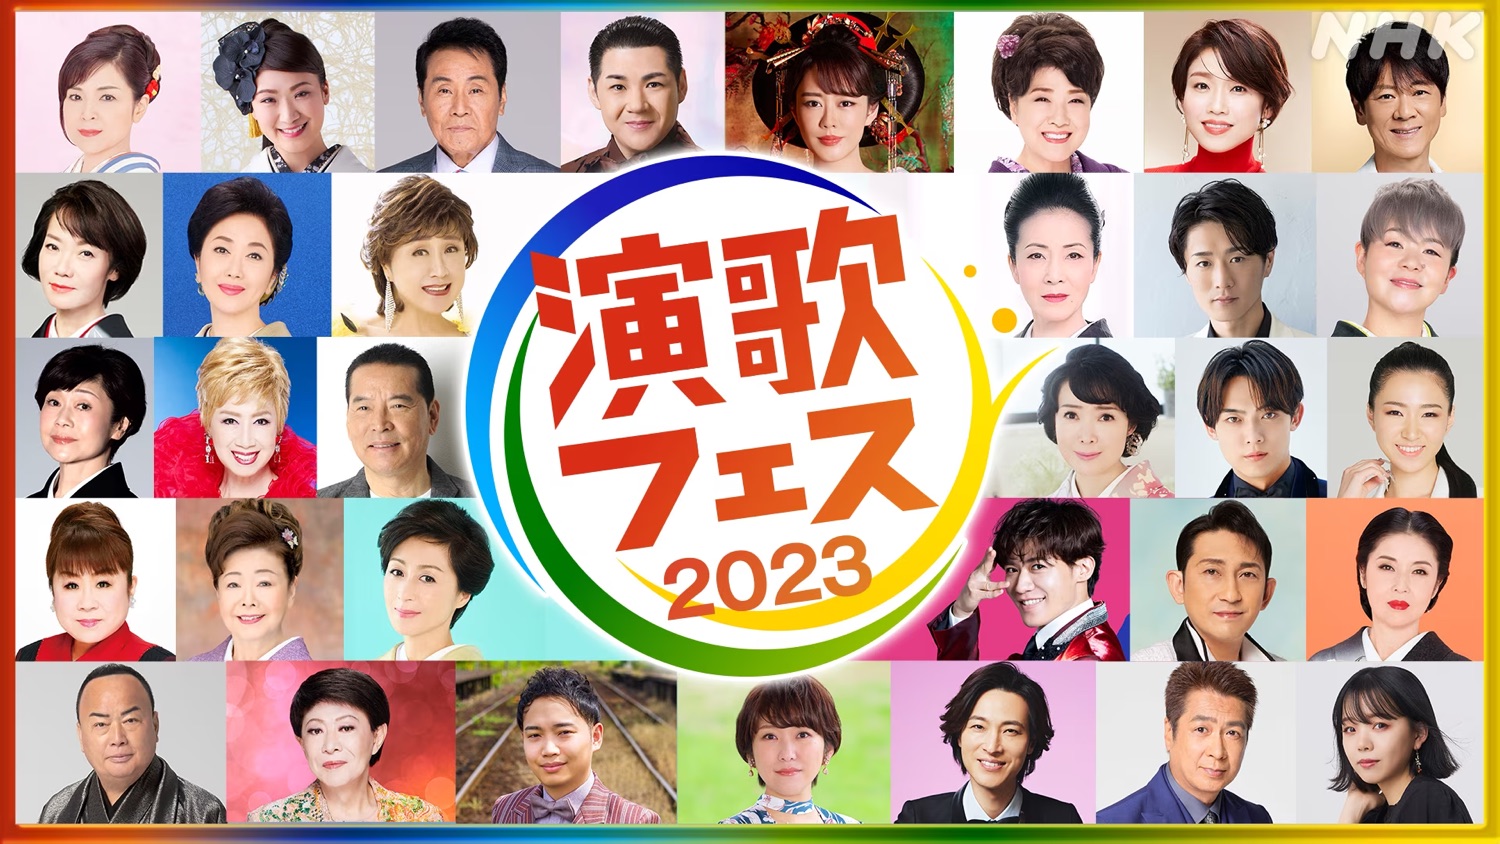 明日の「新・BS日本のうた」は特別編で総勢33名が出演した演歌・歌謡曲の祭典「演歌フェス2023」第2部